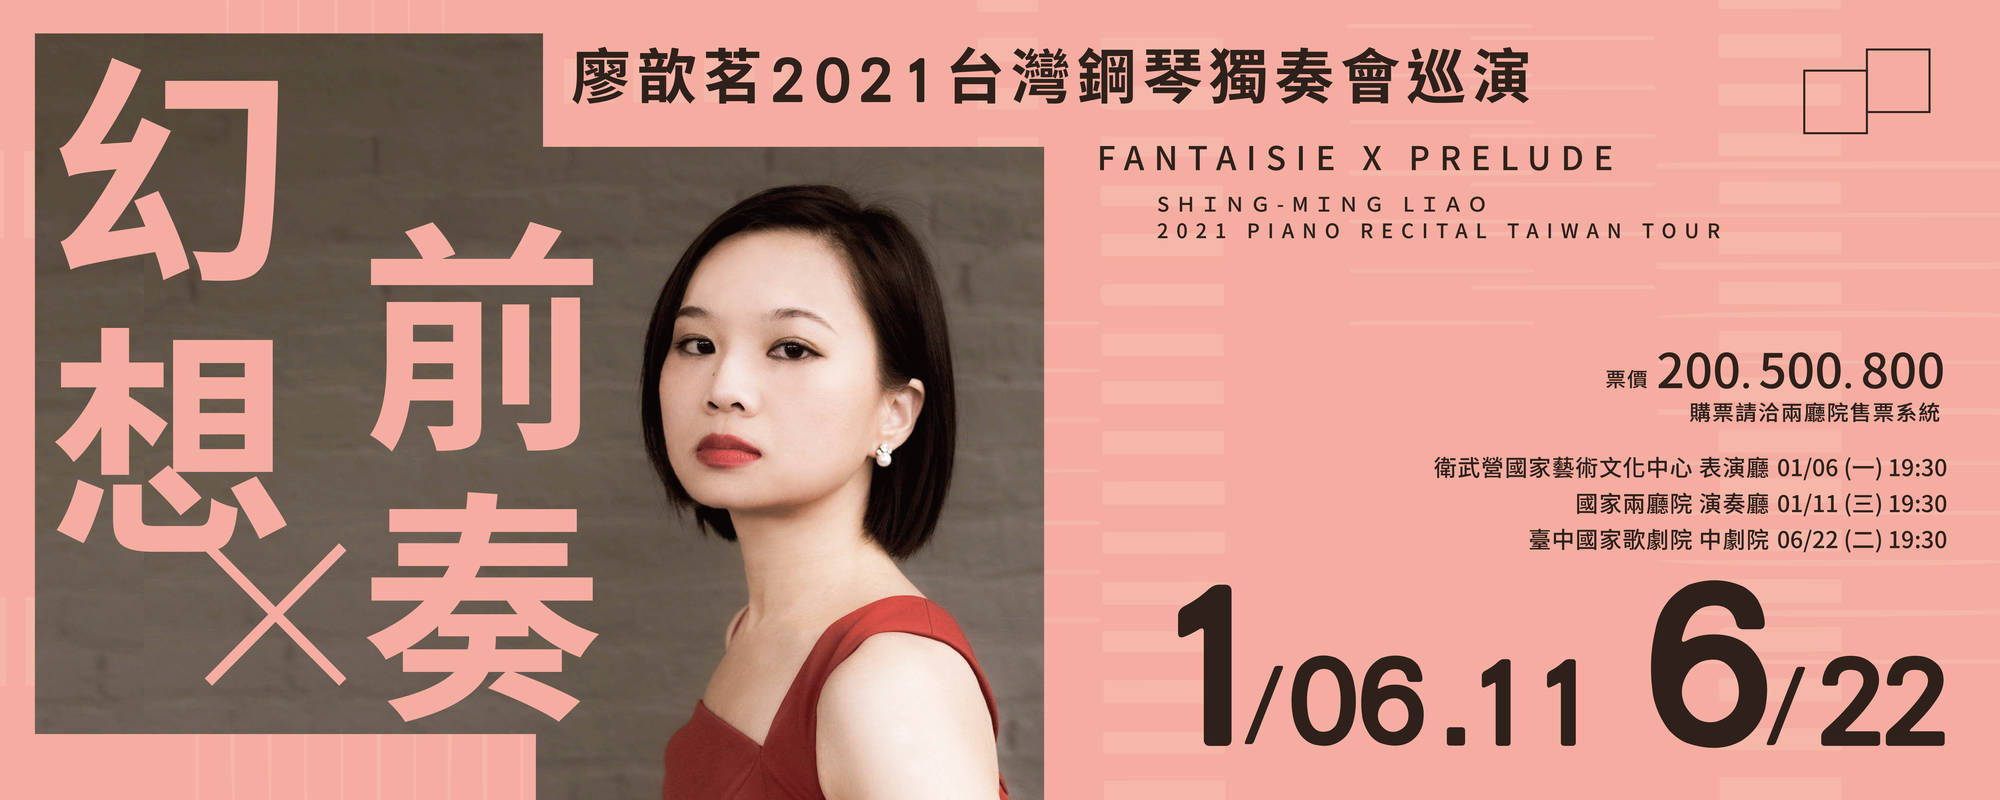 幻想與前奏－廖歆茗2021台灣鋼琴獨奏會